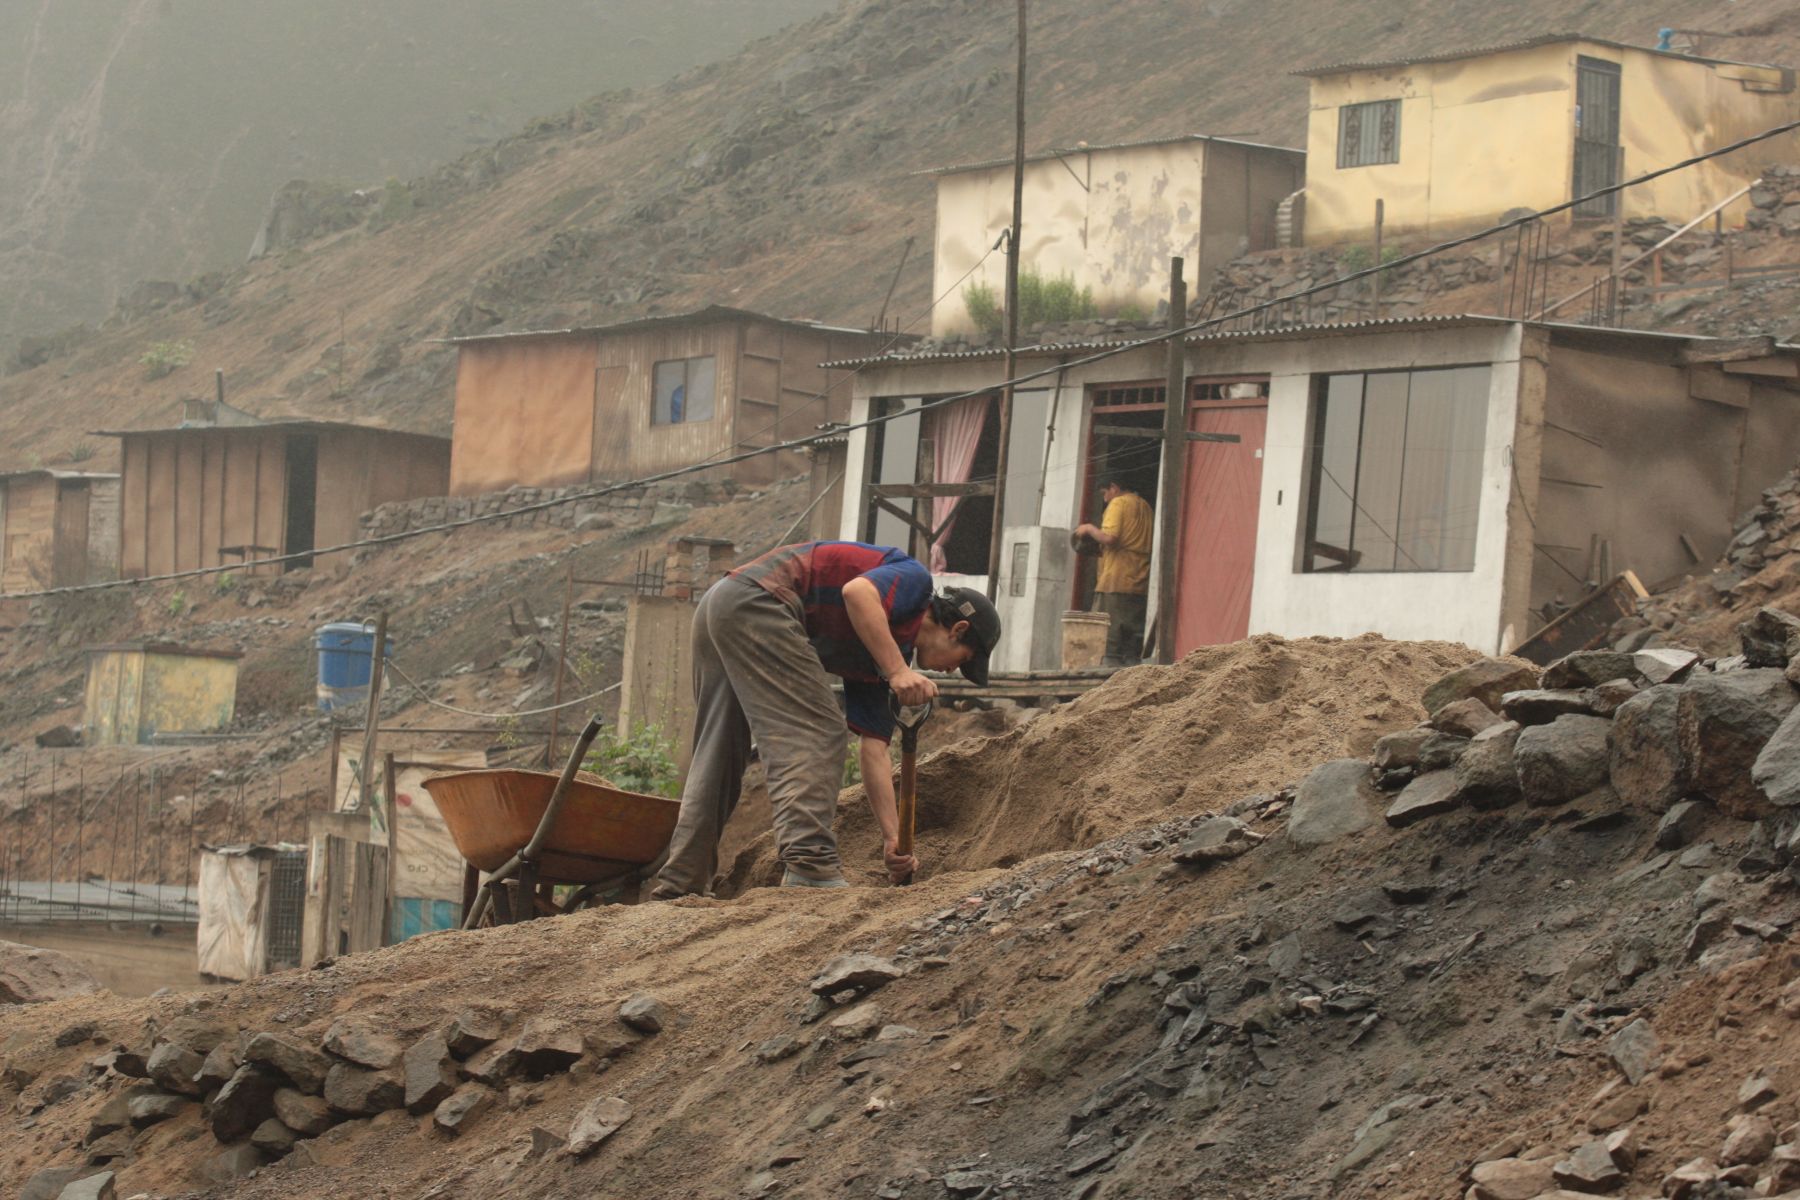 Viviendas construidos en las laderas de los cerros pueden constituir una zona de alto riesgo ante un sismo. Foto: Andina/Archivo.